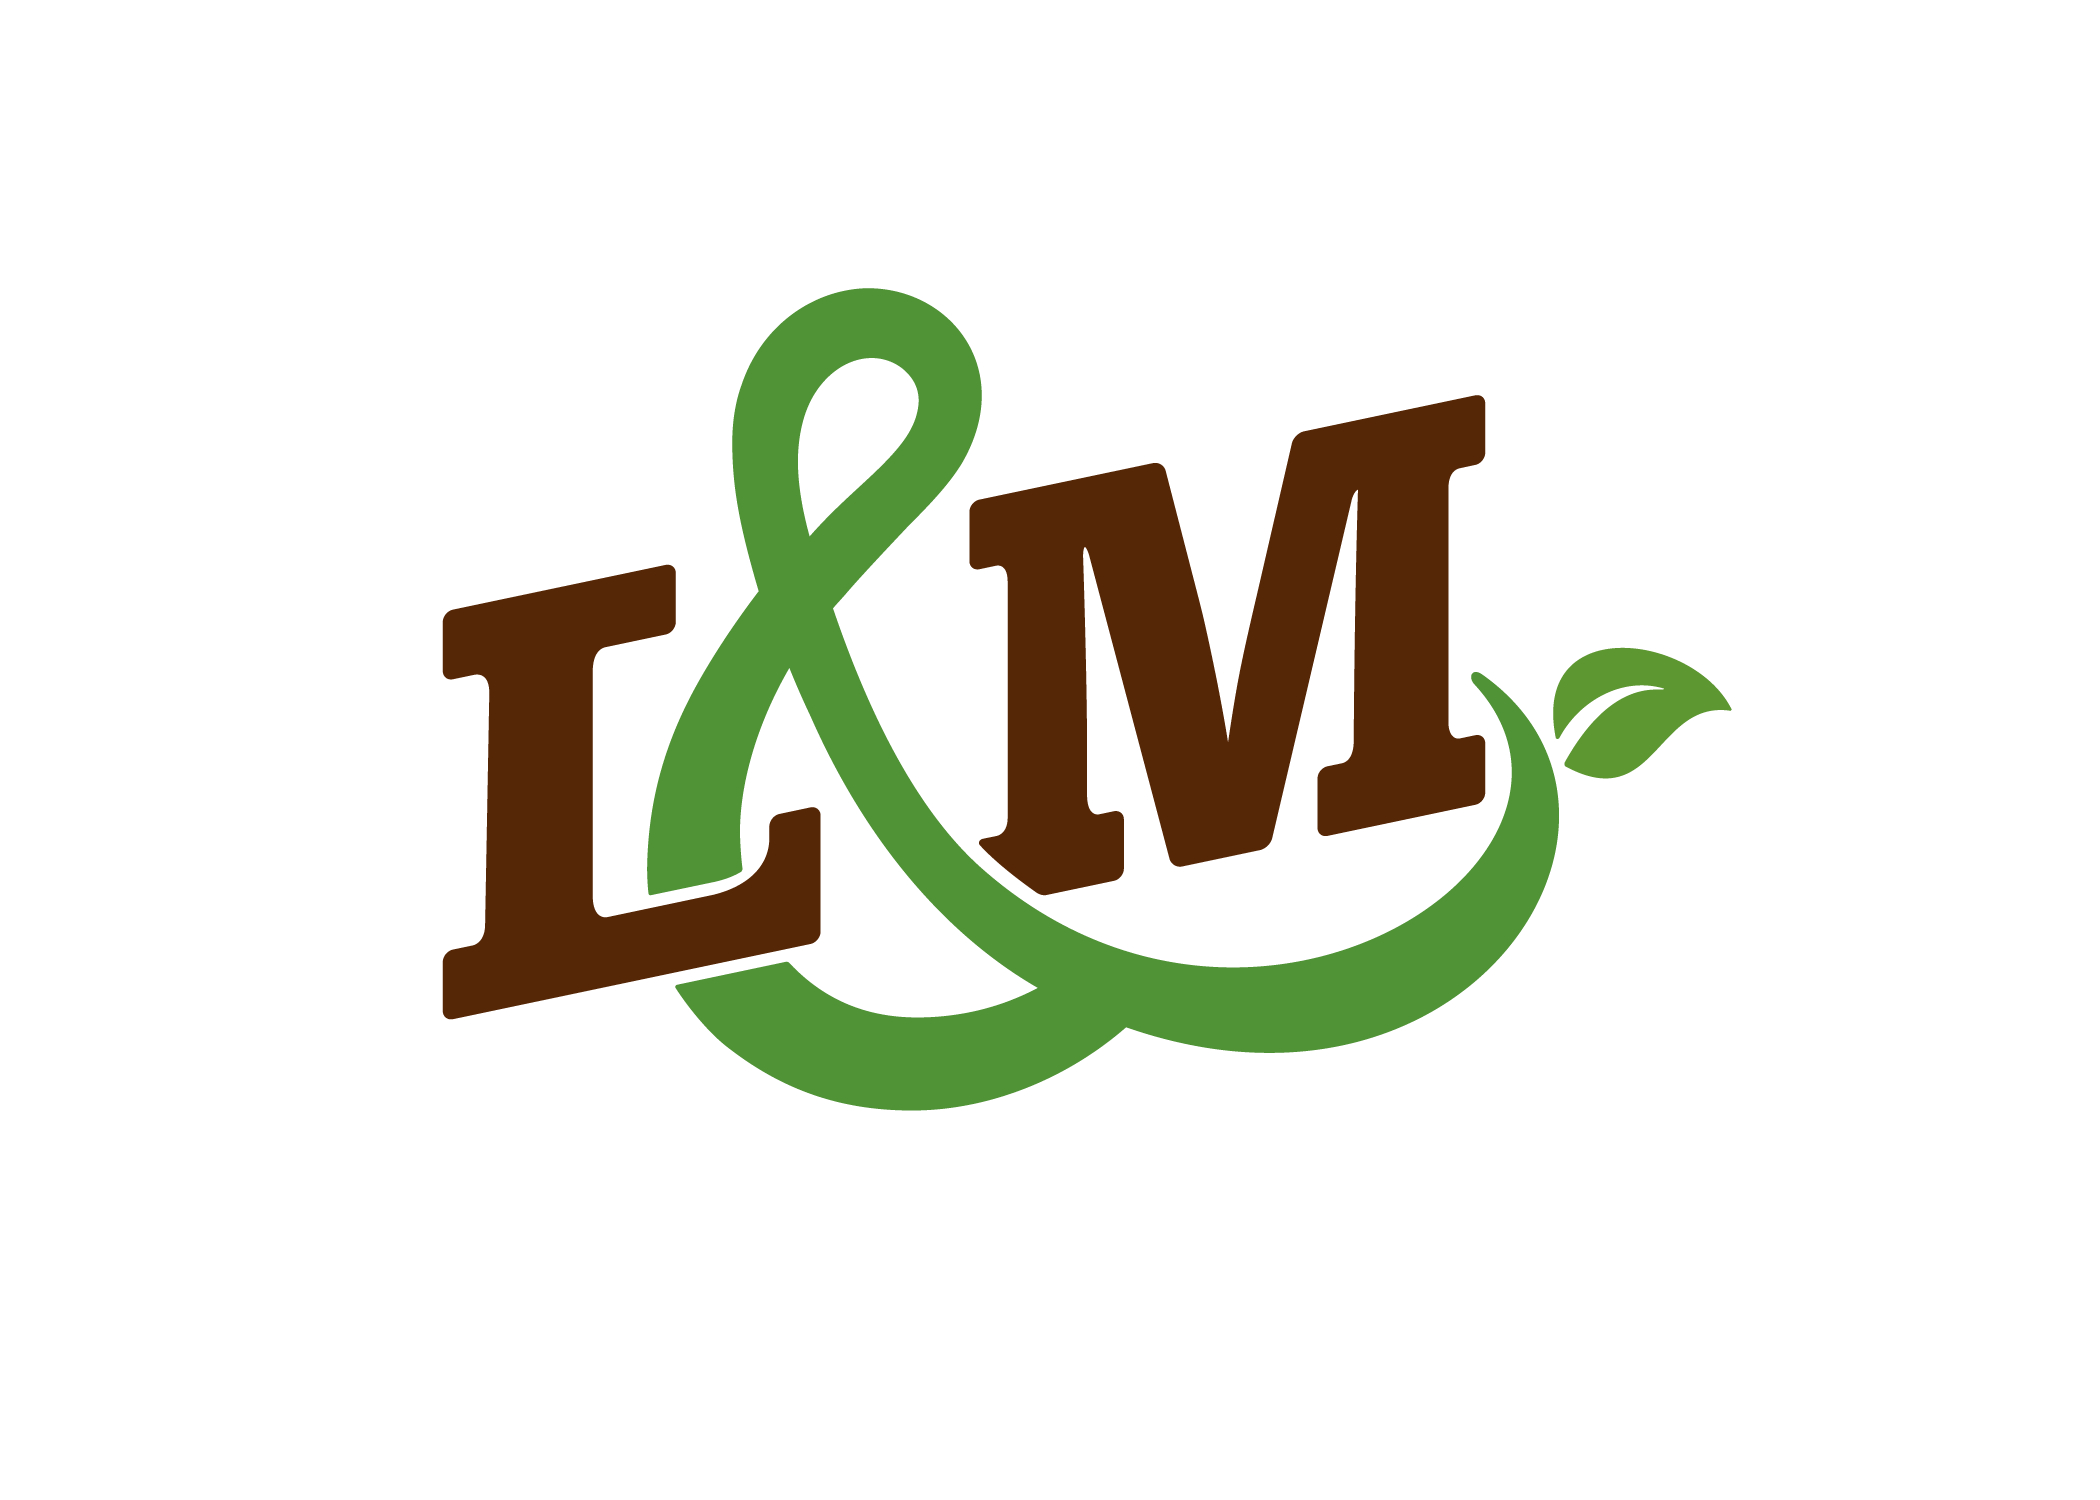 L&M Logo